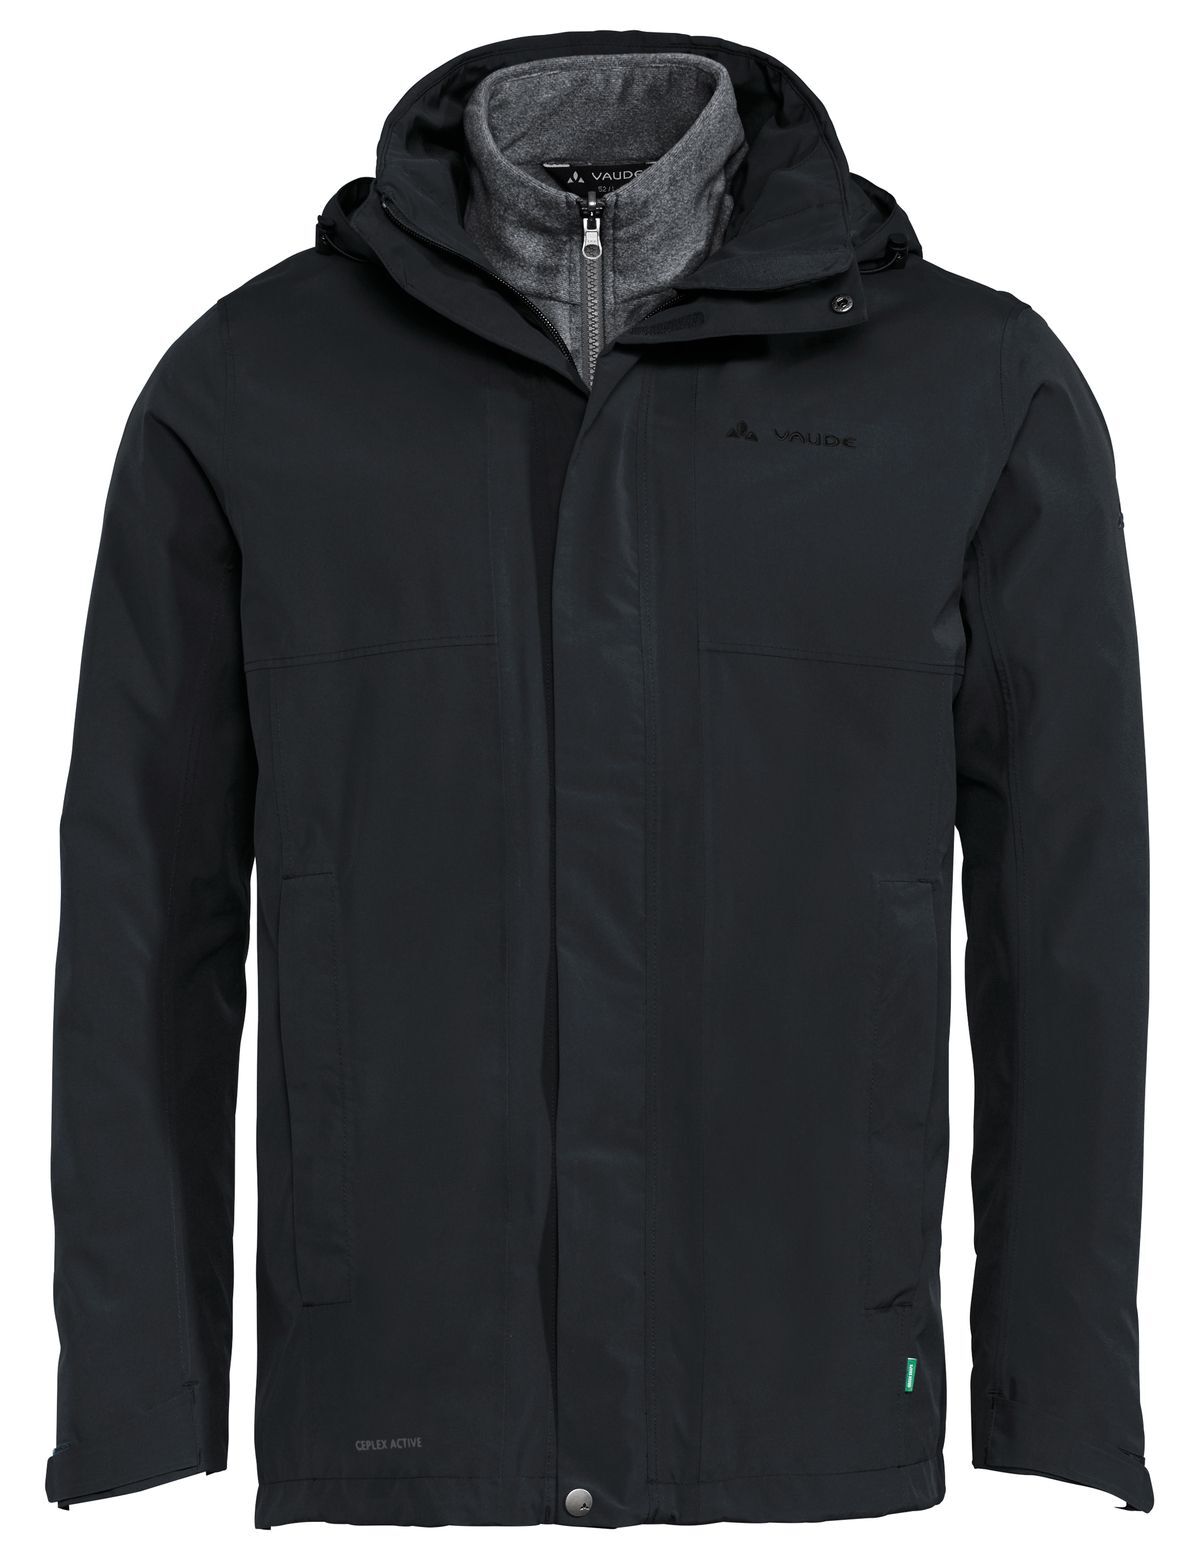 Vaude Rosemoor 3in1 Jacket - 3-in-1 jacket - Men's